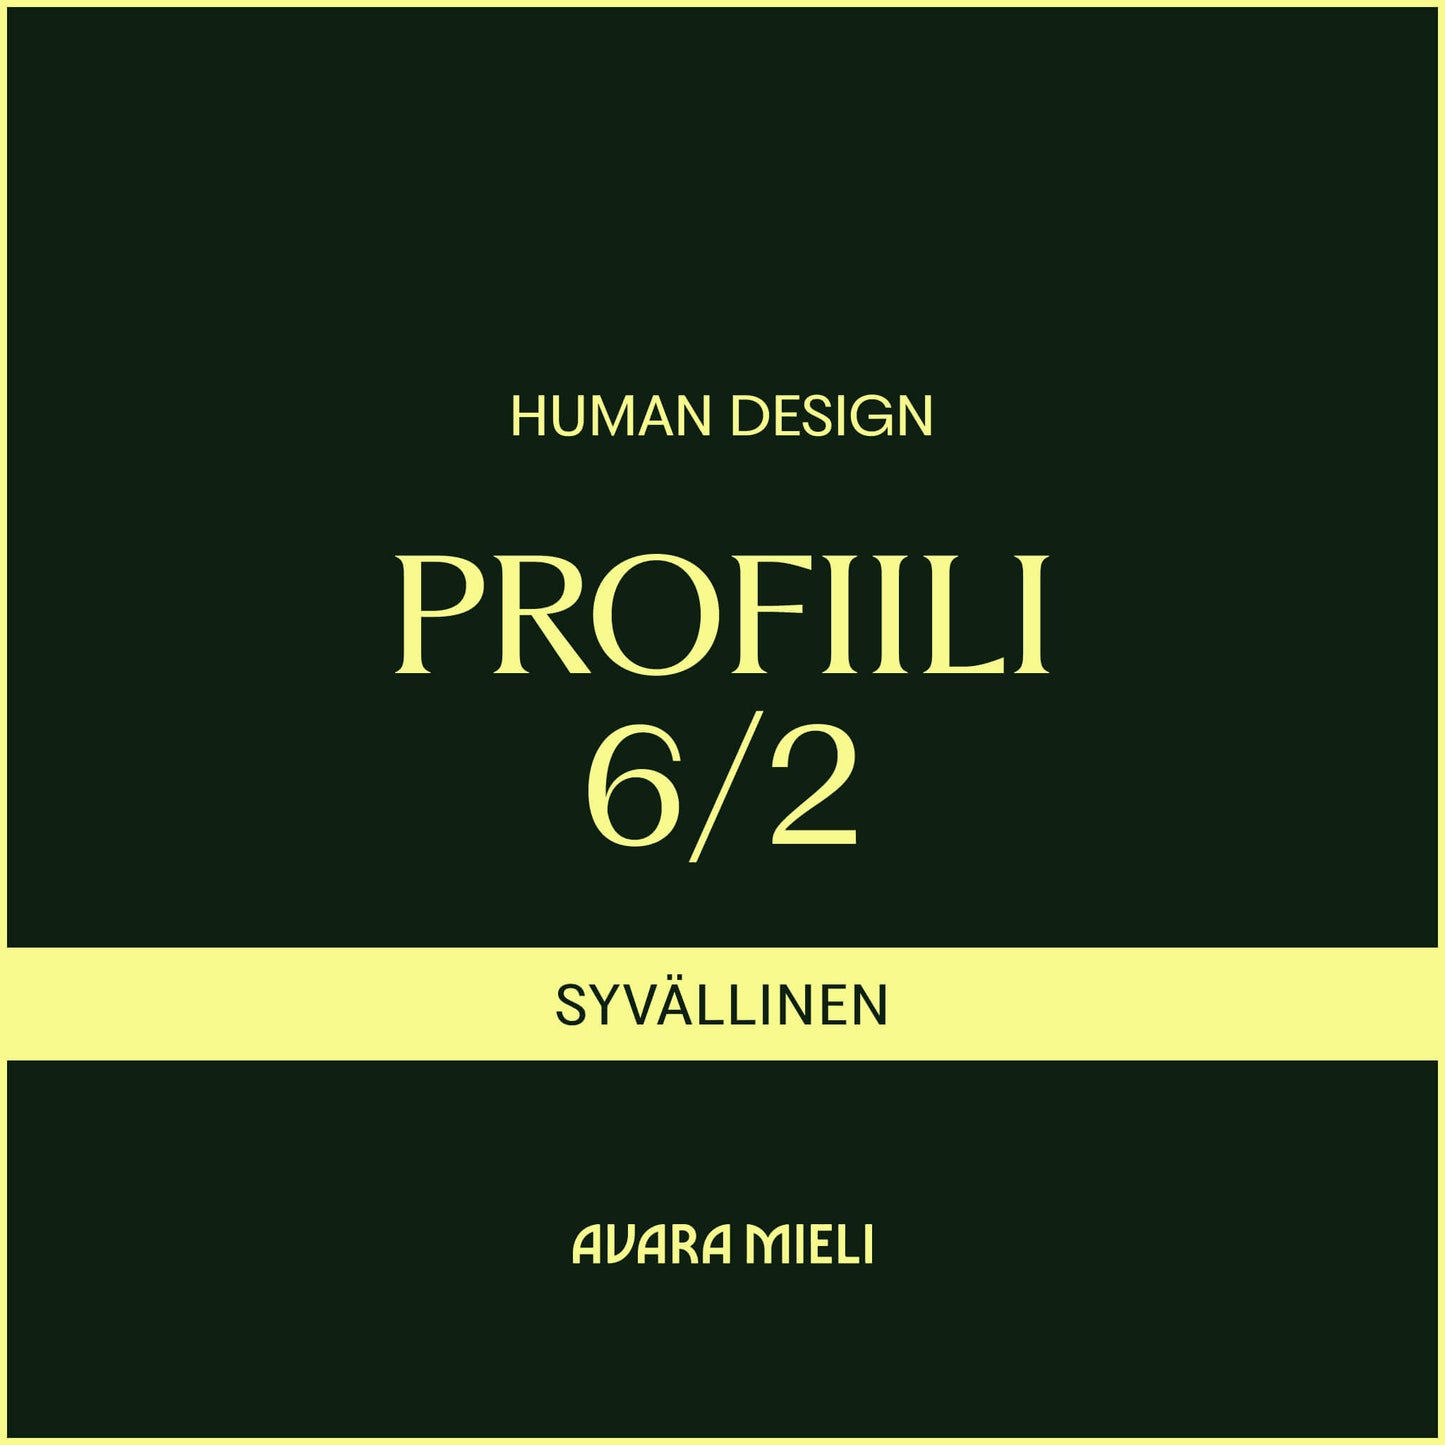 Human Design Profiili 6/2